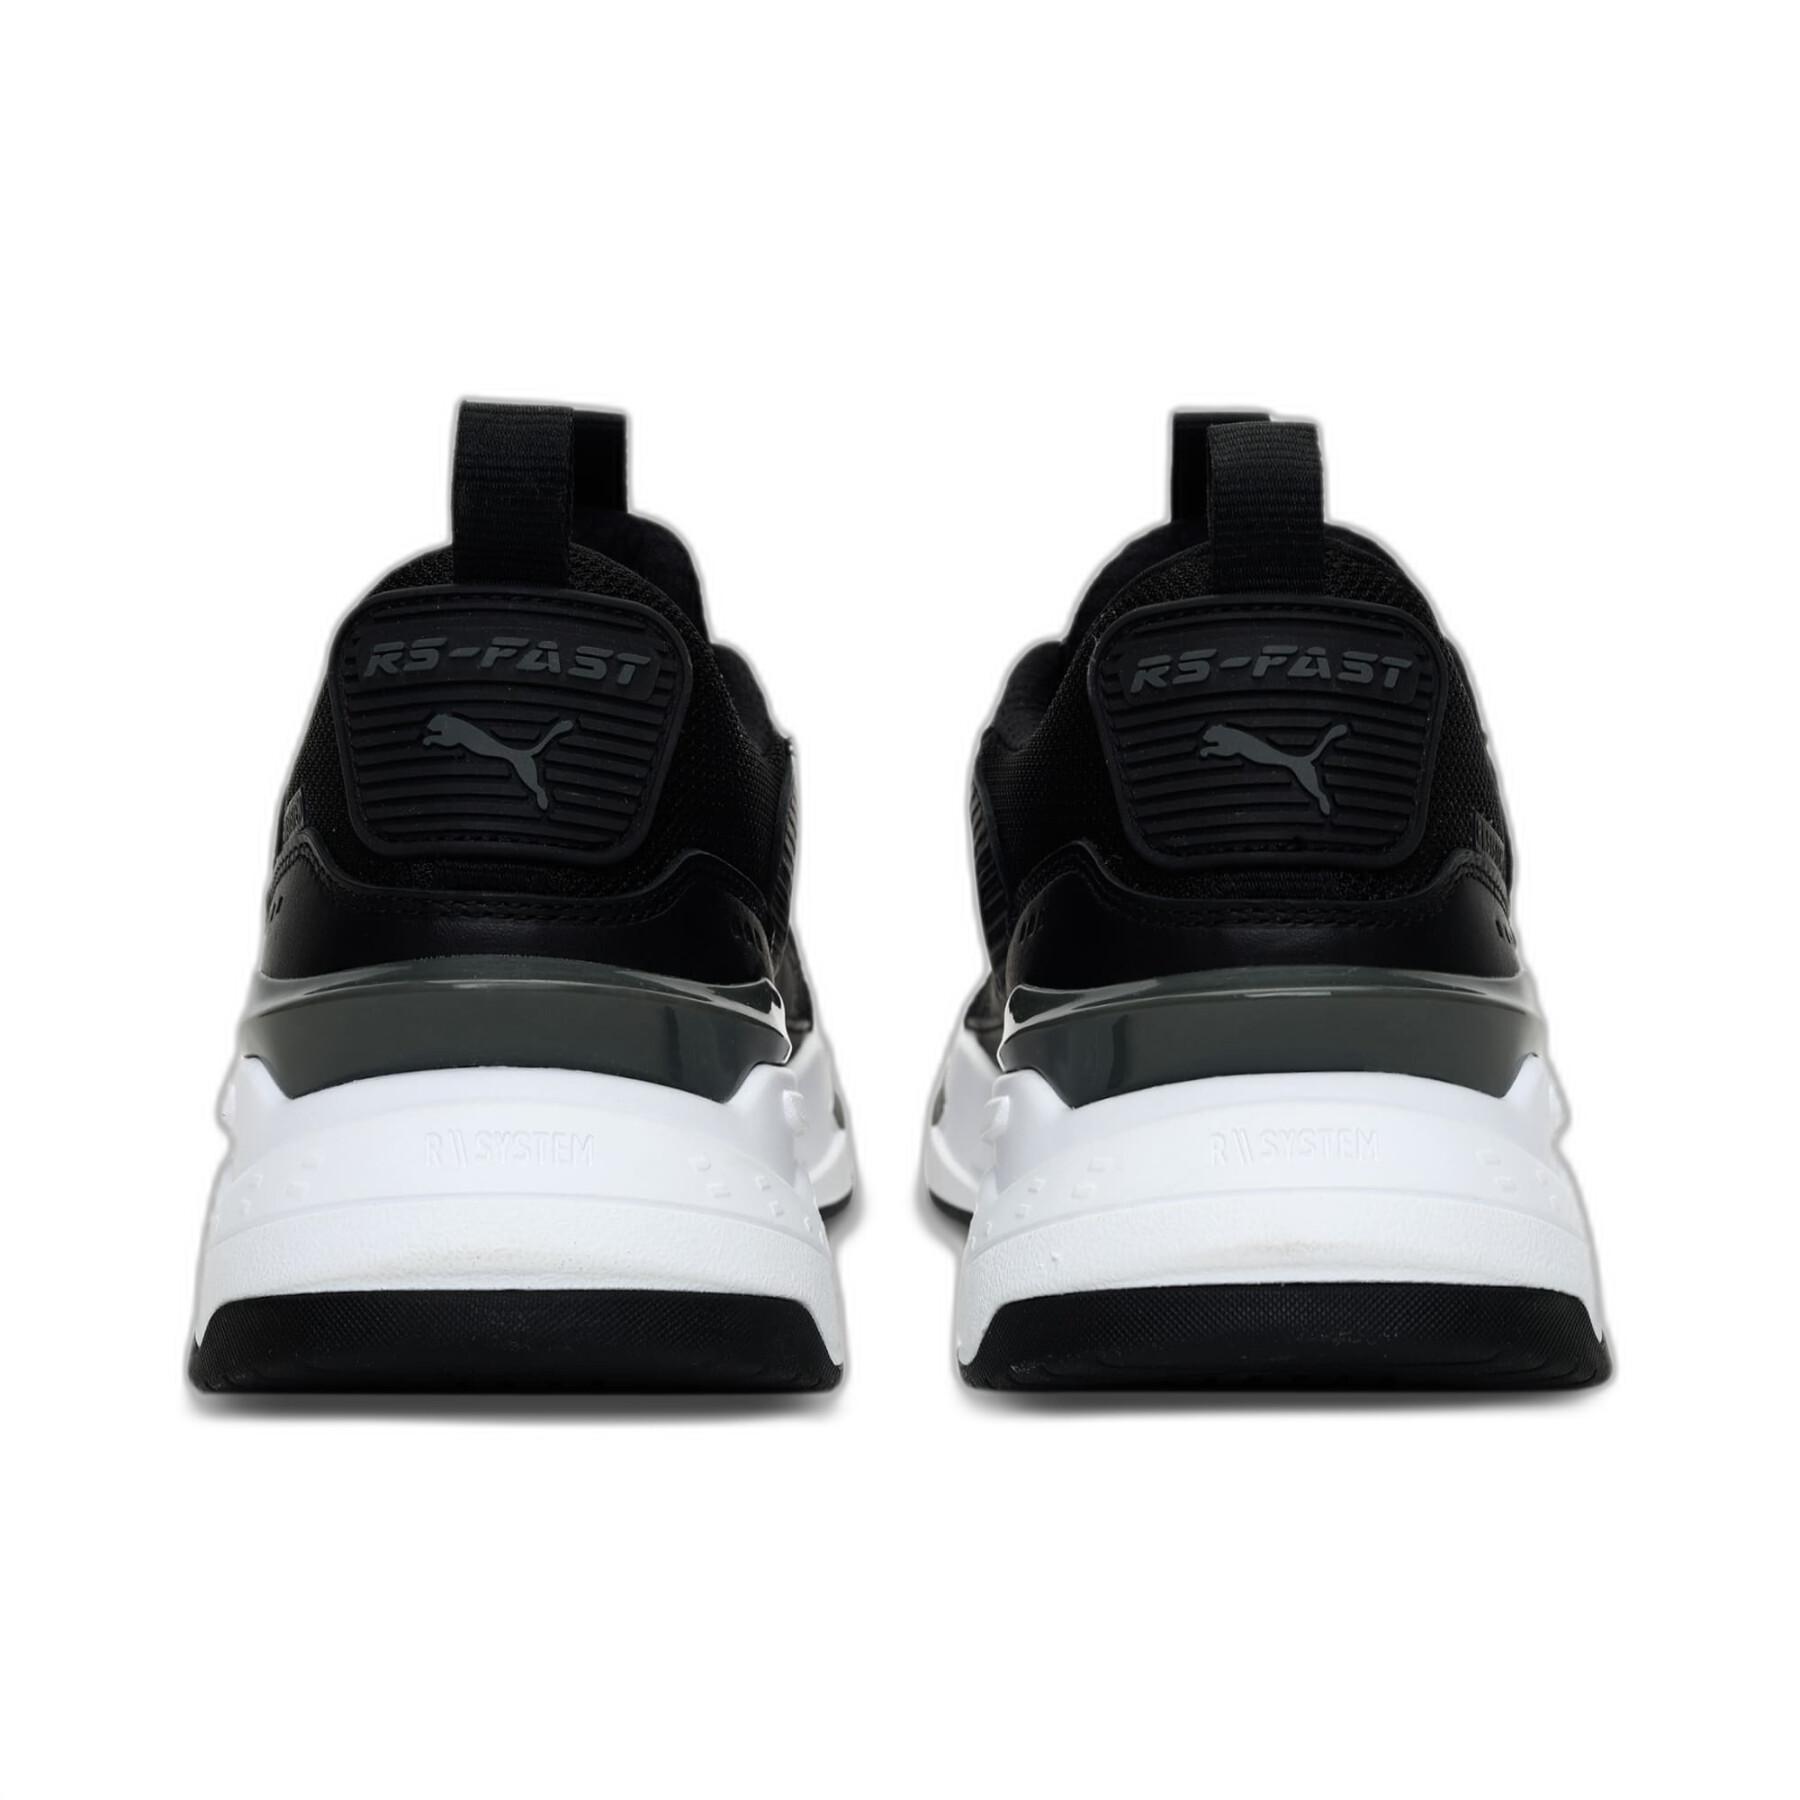 Sneakers Puma RS-Fast Limiter B&W